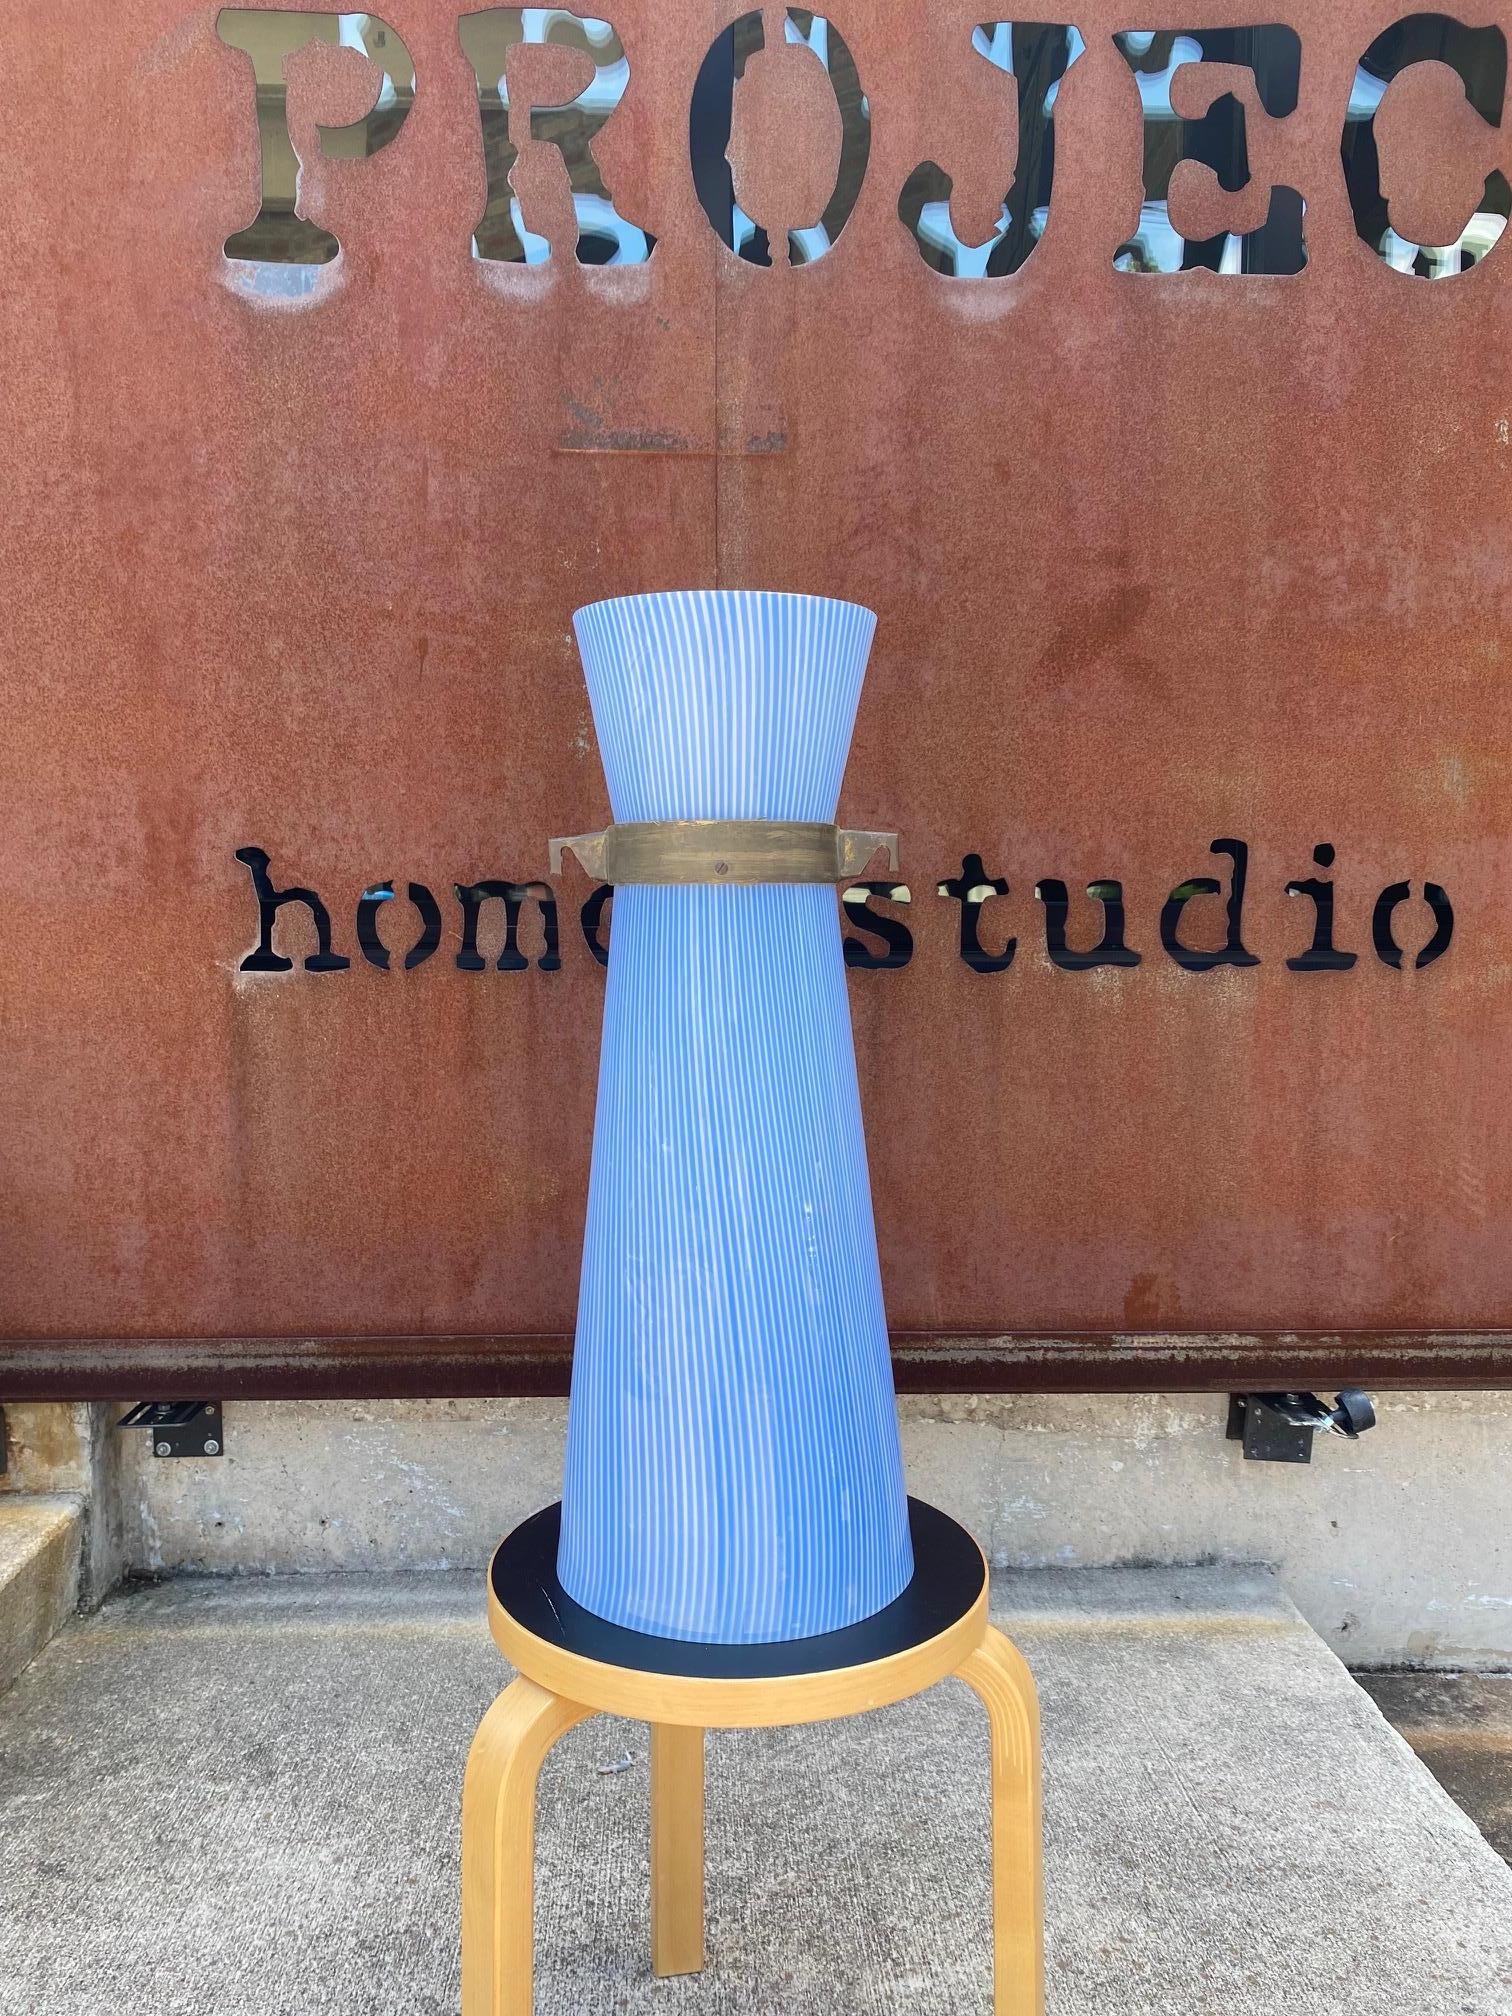 Hängeleuchte aus blau-weiß gestreiftem Murano-Glas von Massimo Vignelli, entworfen für Venini glass. Die Aufhängung aus massivem Messing ist eine einfache, aber schöne Art, diese dynamische italienische Leuchte aus geblasenem Glas der frühen Moderne